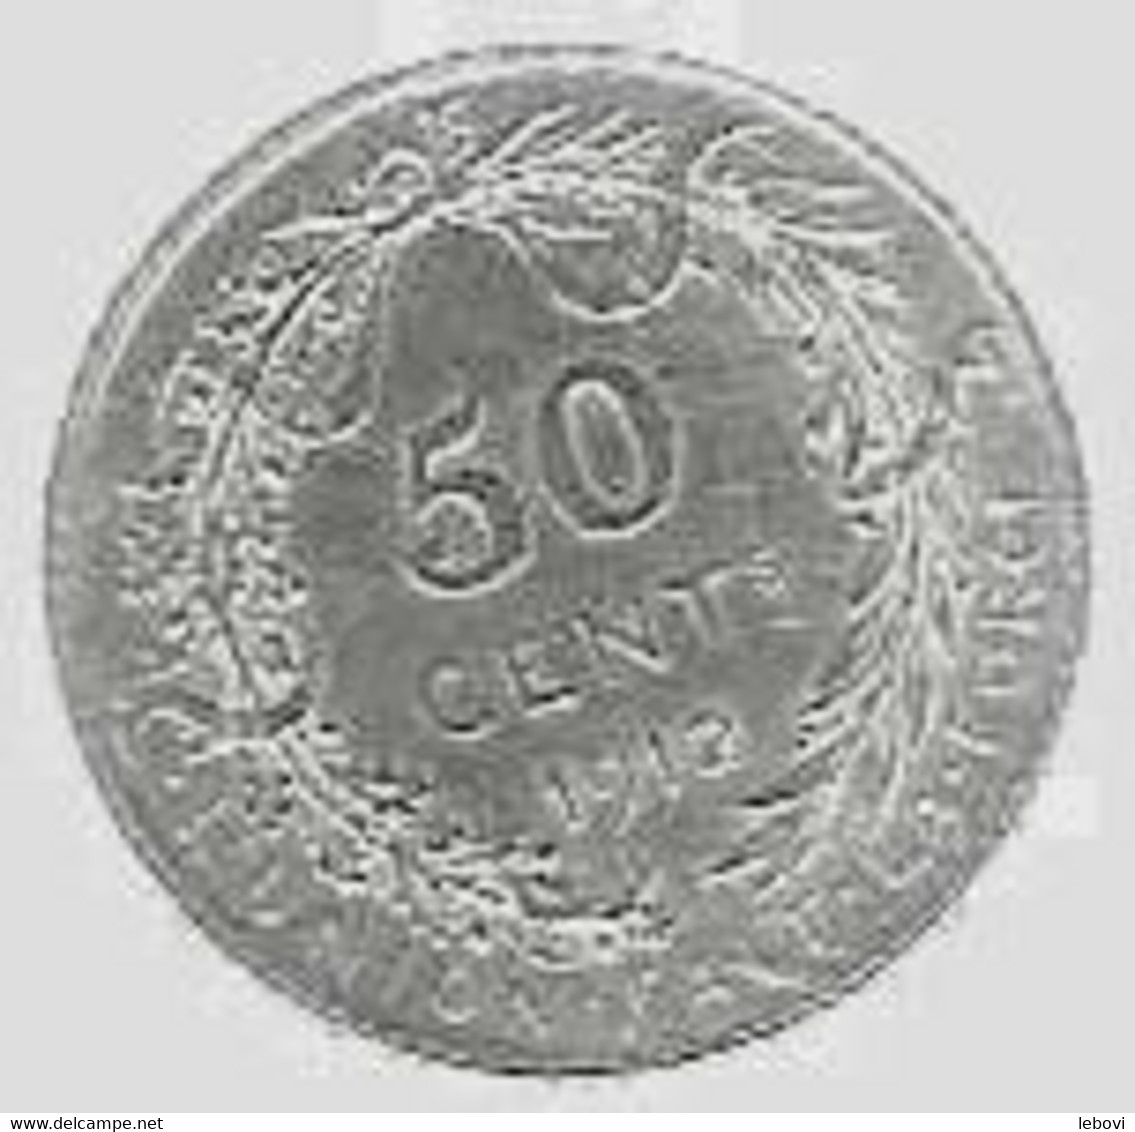 ALBERT I - 50 Centimes 1912 FR - 50 Cent